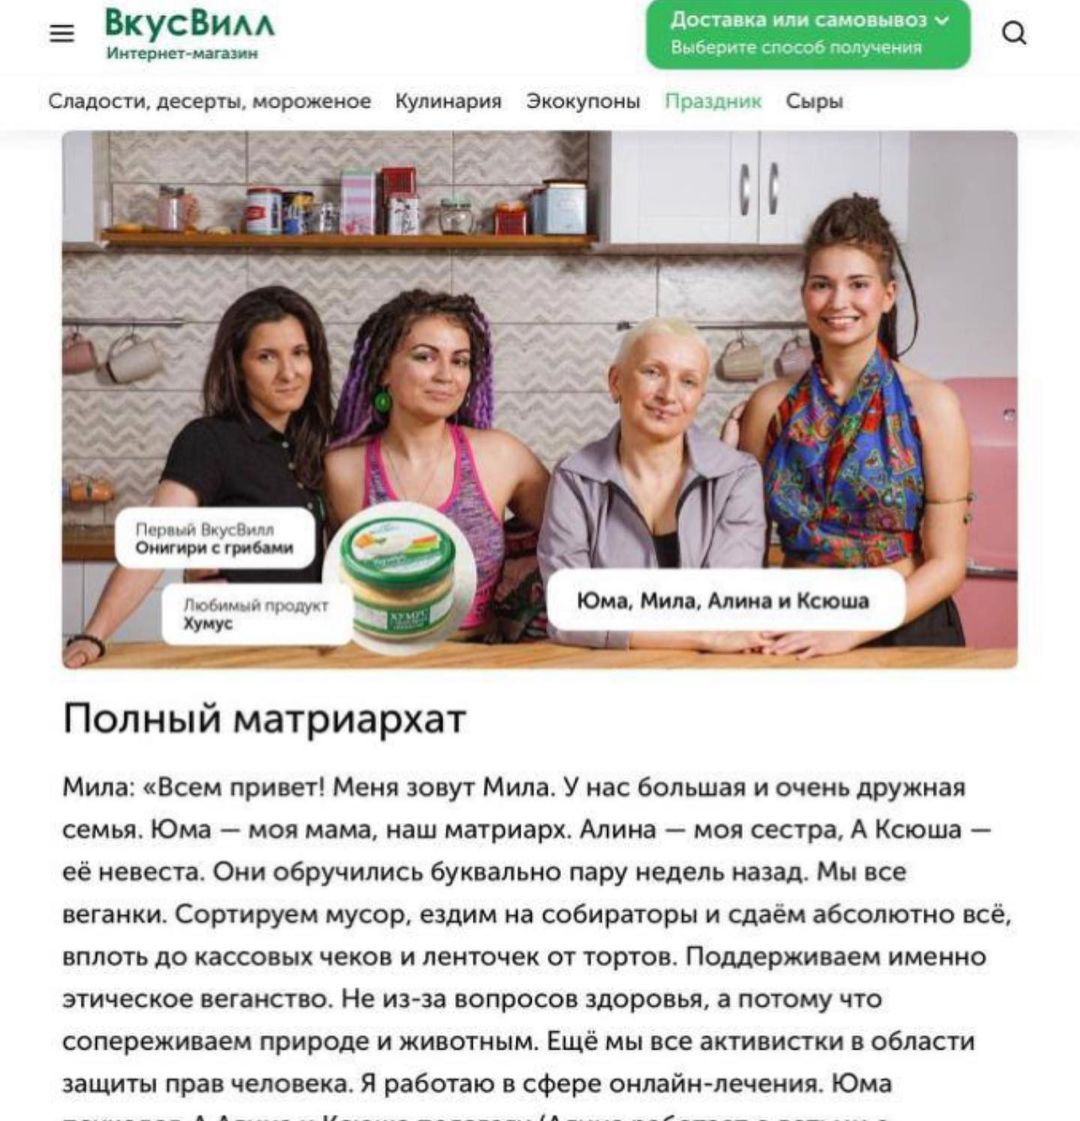 Ксения Собчак справедливо высмеяла руководство "ВкусВилл" за удаление  скандальной рекламы